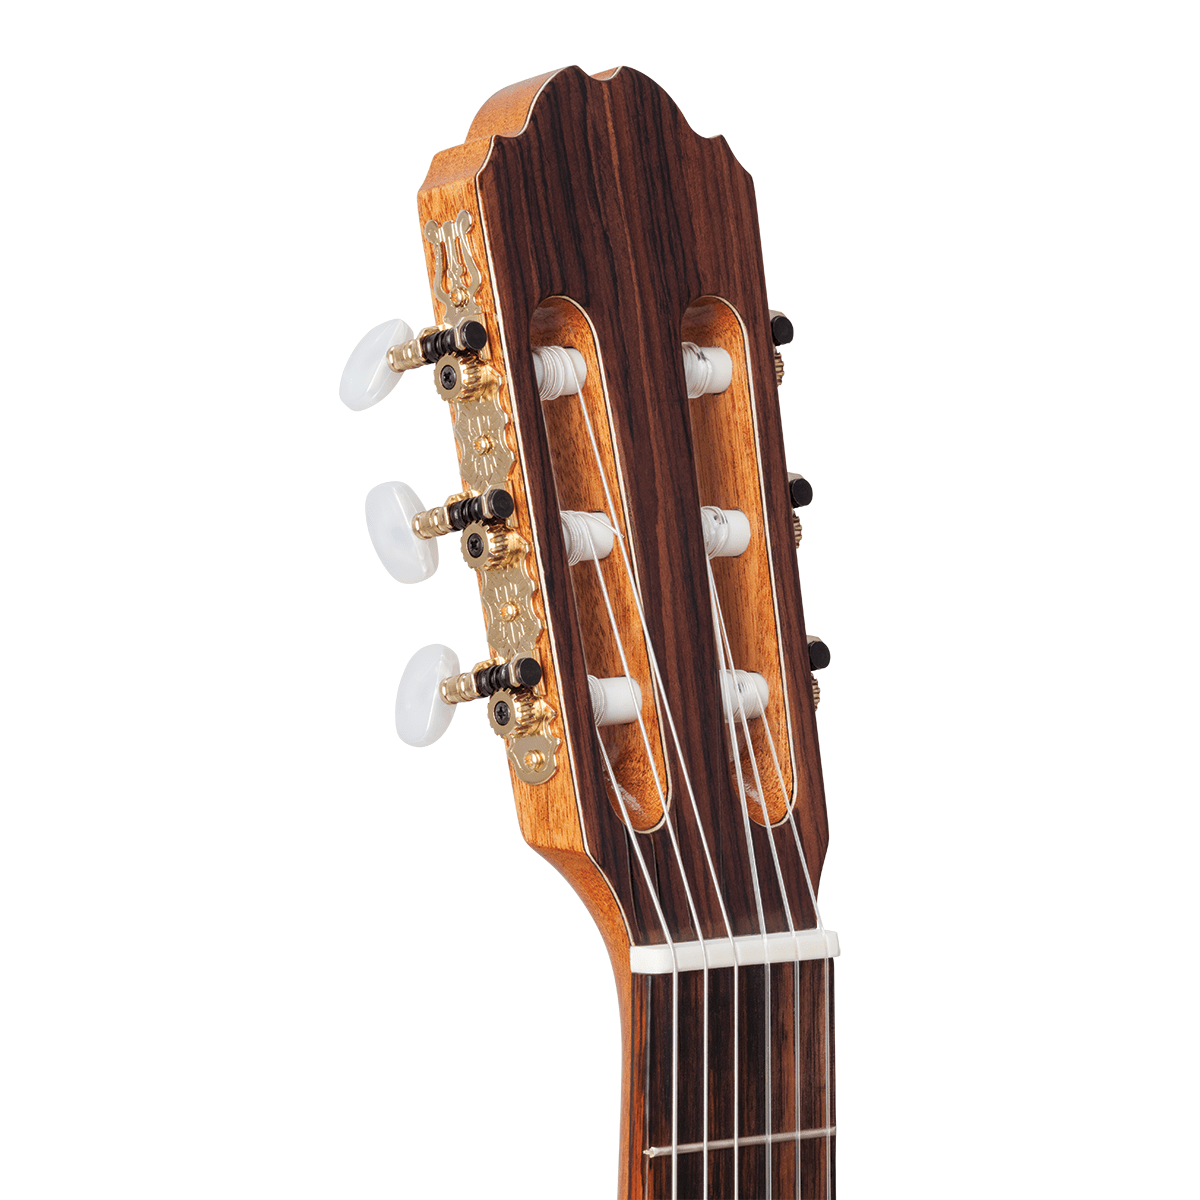 Kremona F65S Fiesta Spruce / Rosewood Classical Guitar w/case